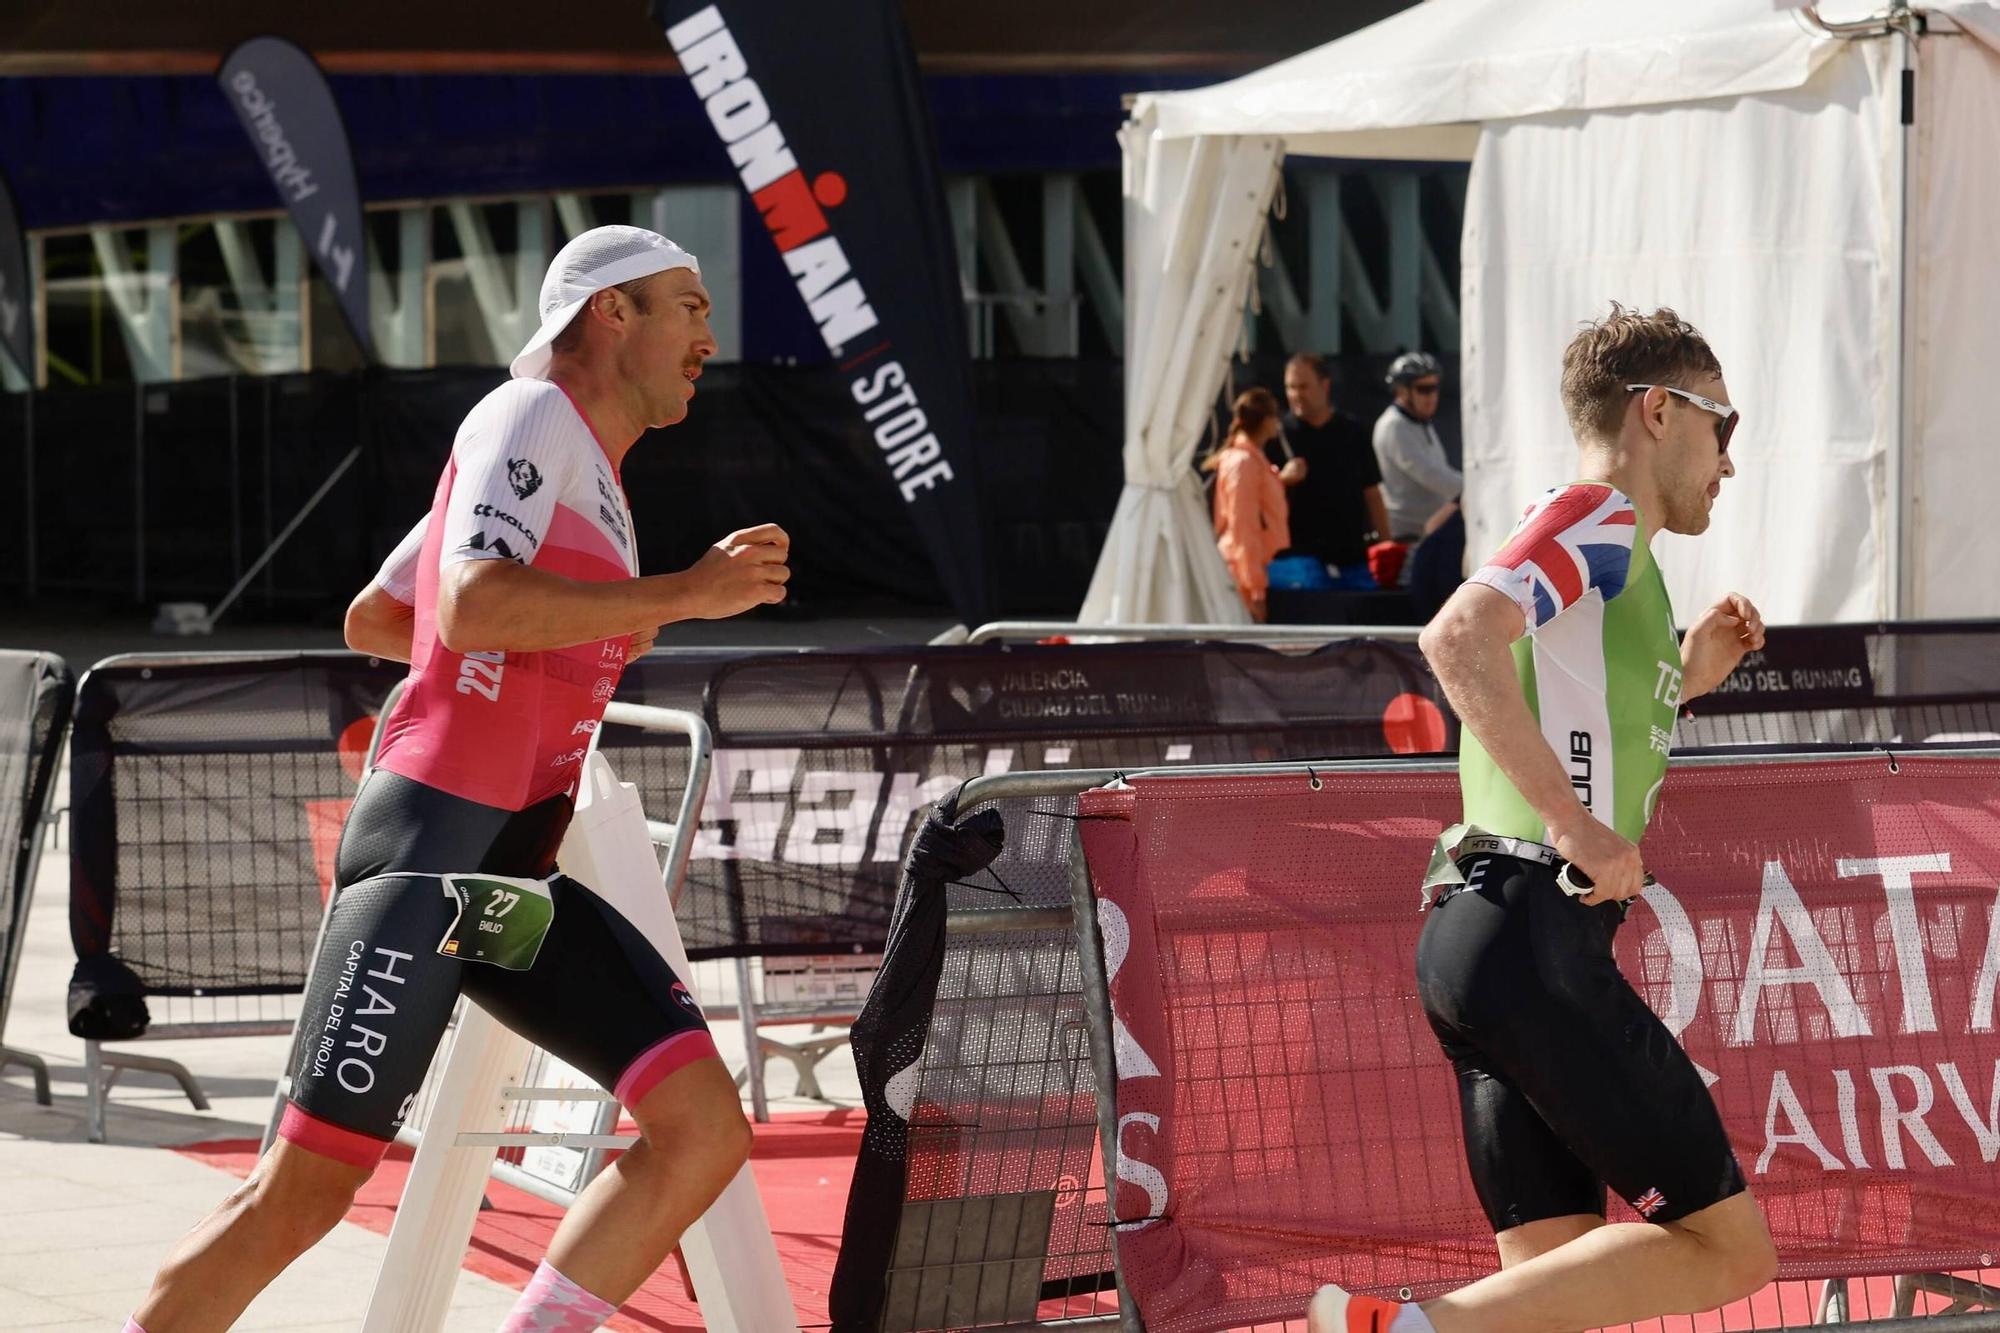 Las imágenes del Ironman 70.3 en Valencia